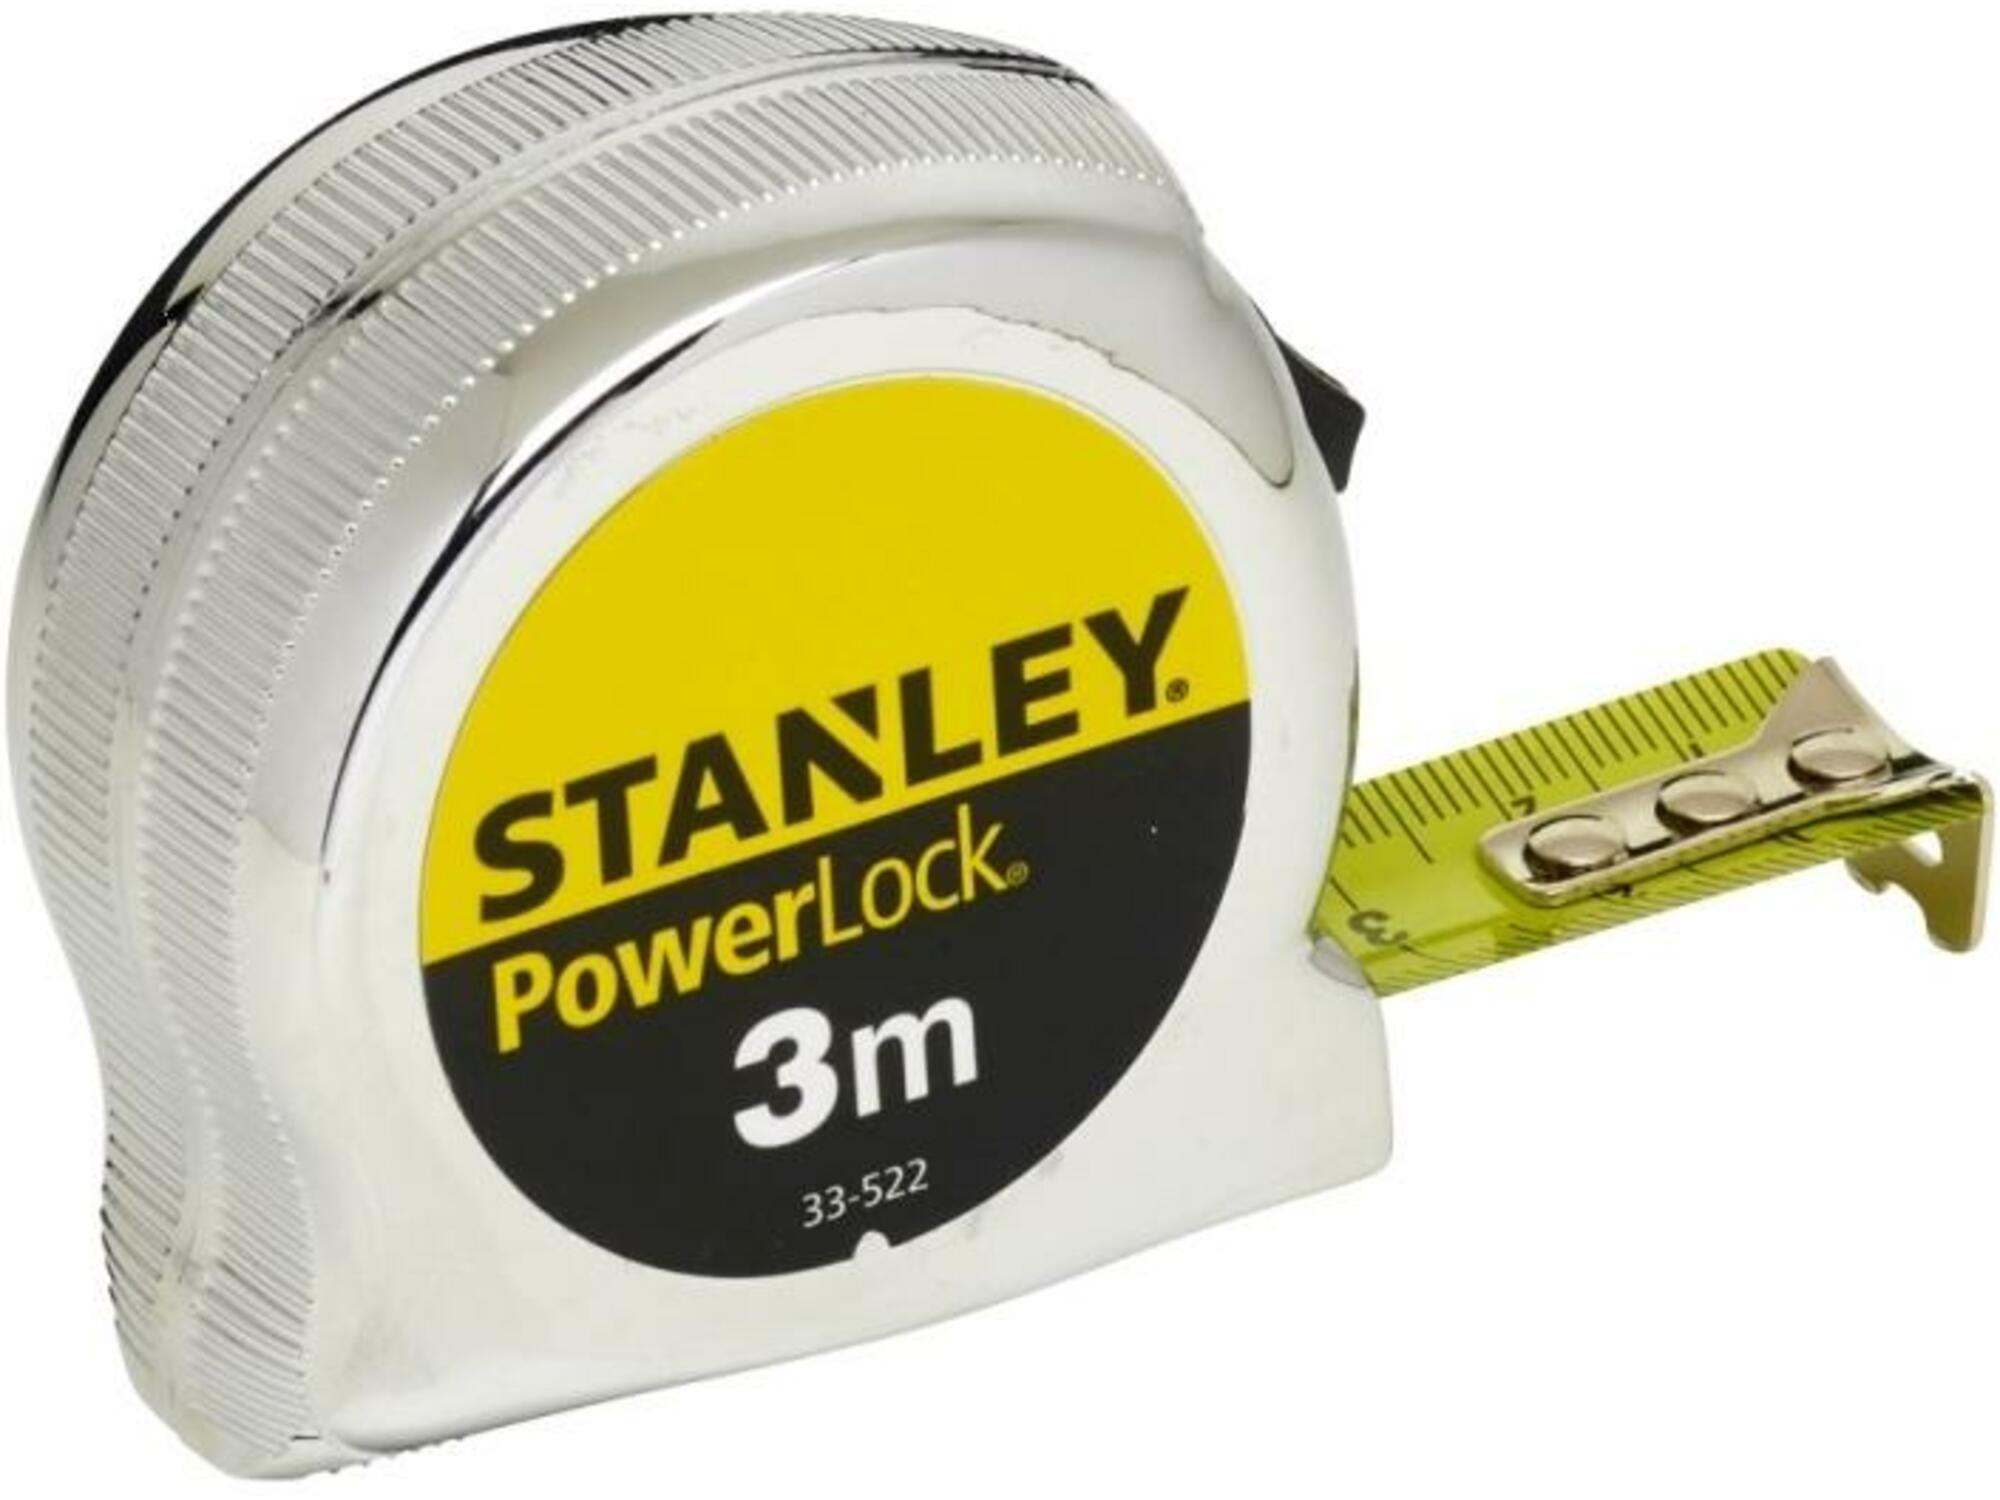 STANLEY meter Powerlock 0-33-522, 3m